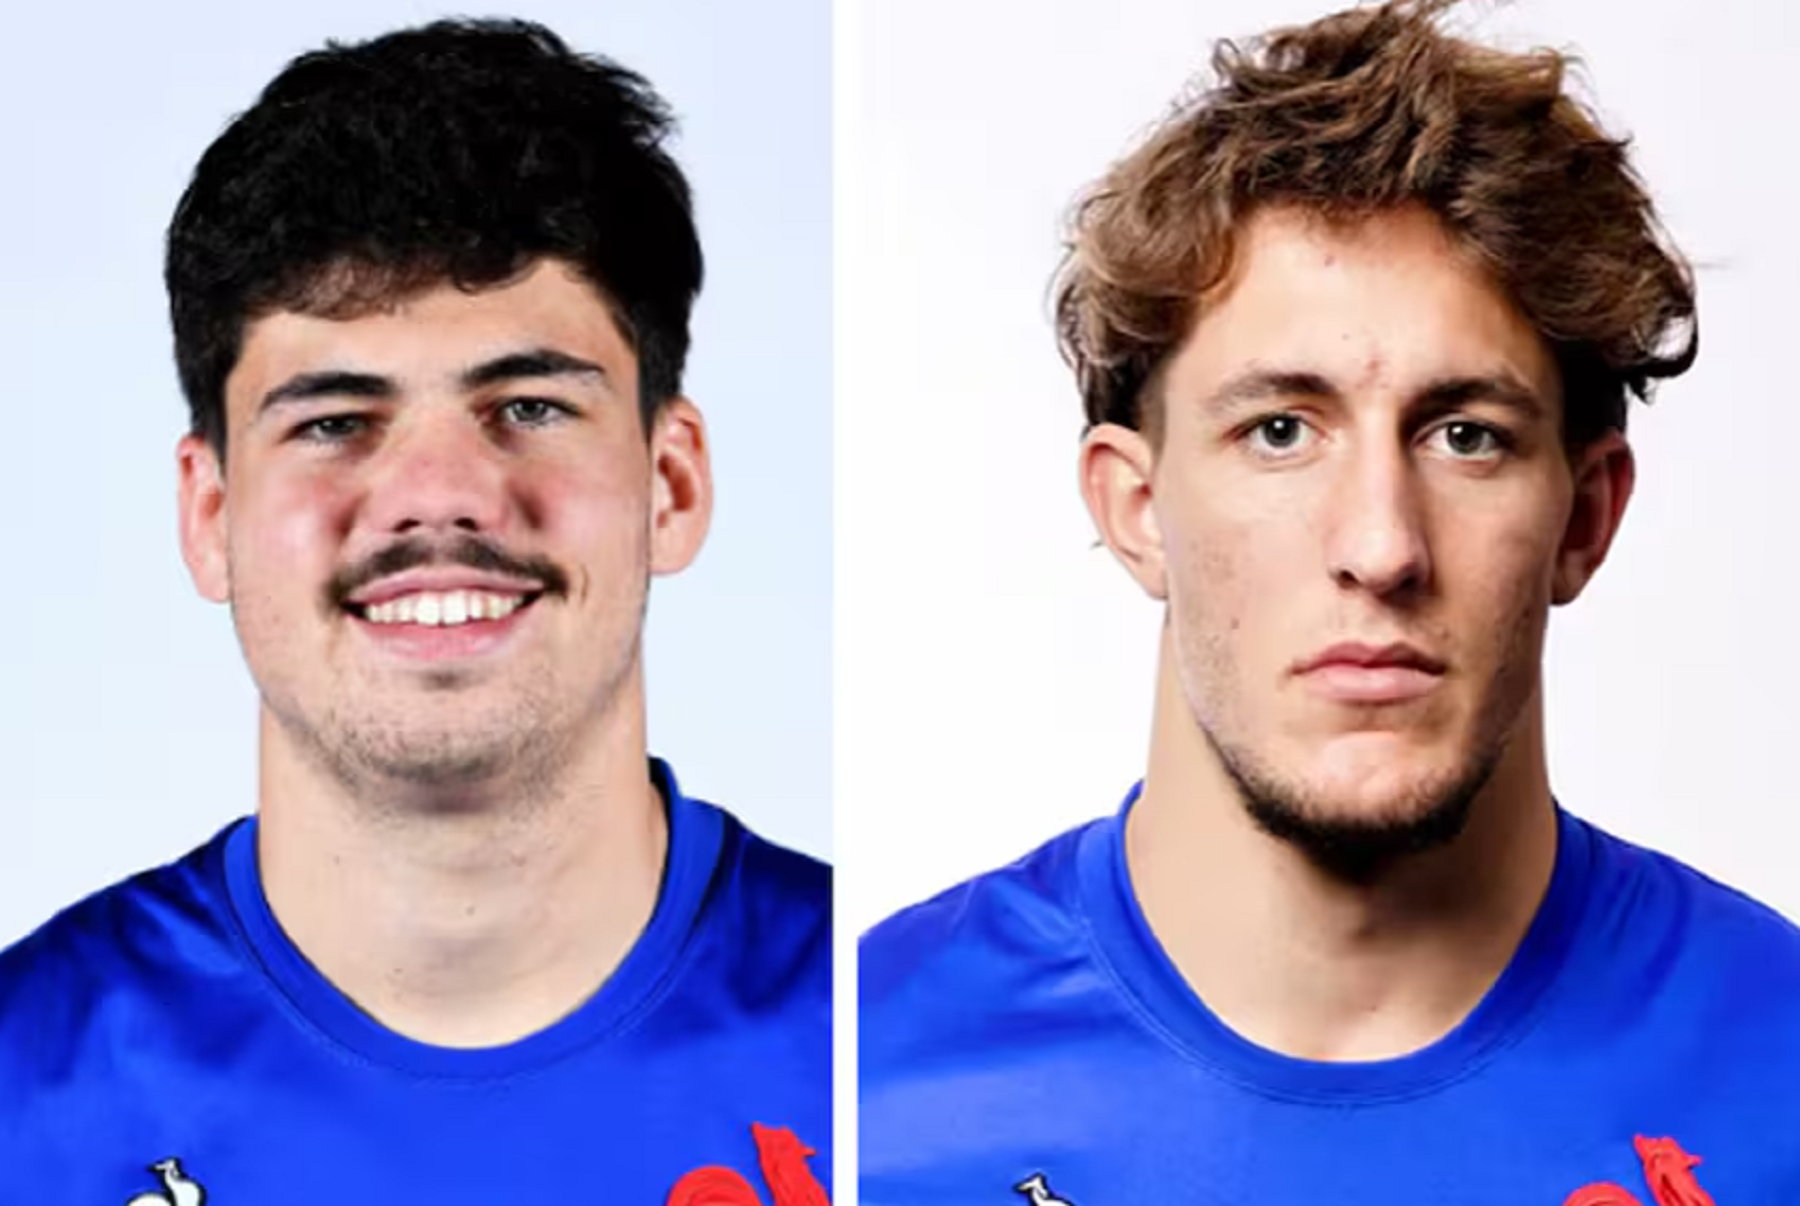 Hugo Auradou, de 20 años, y Oscar Jegou, de 21, son los dos jugadores de rugby de Francia acusados. (Gentileza)
